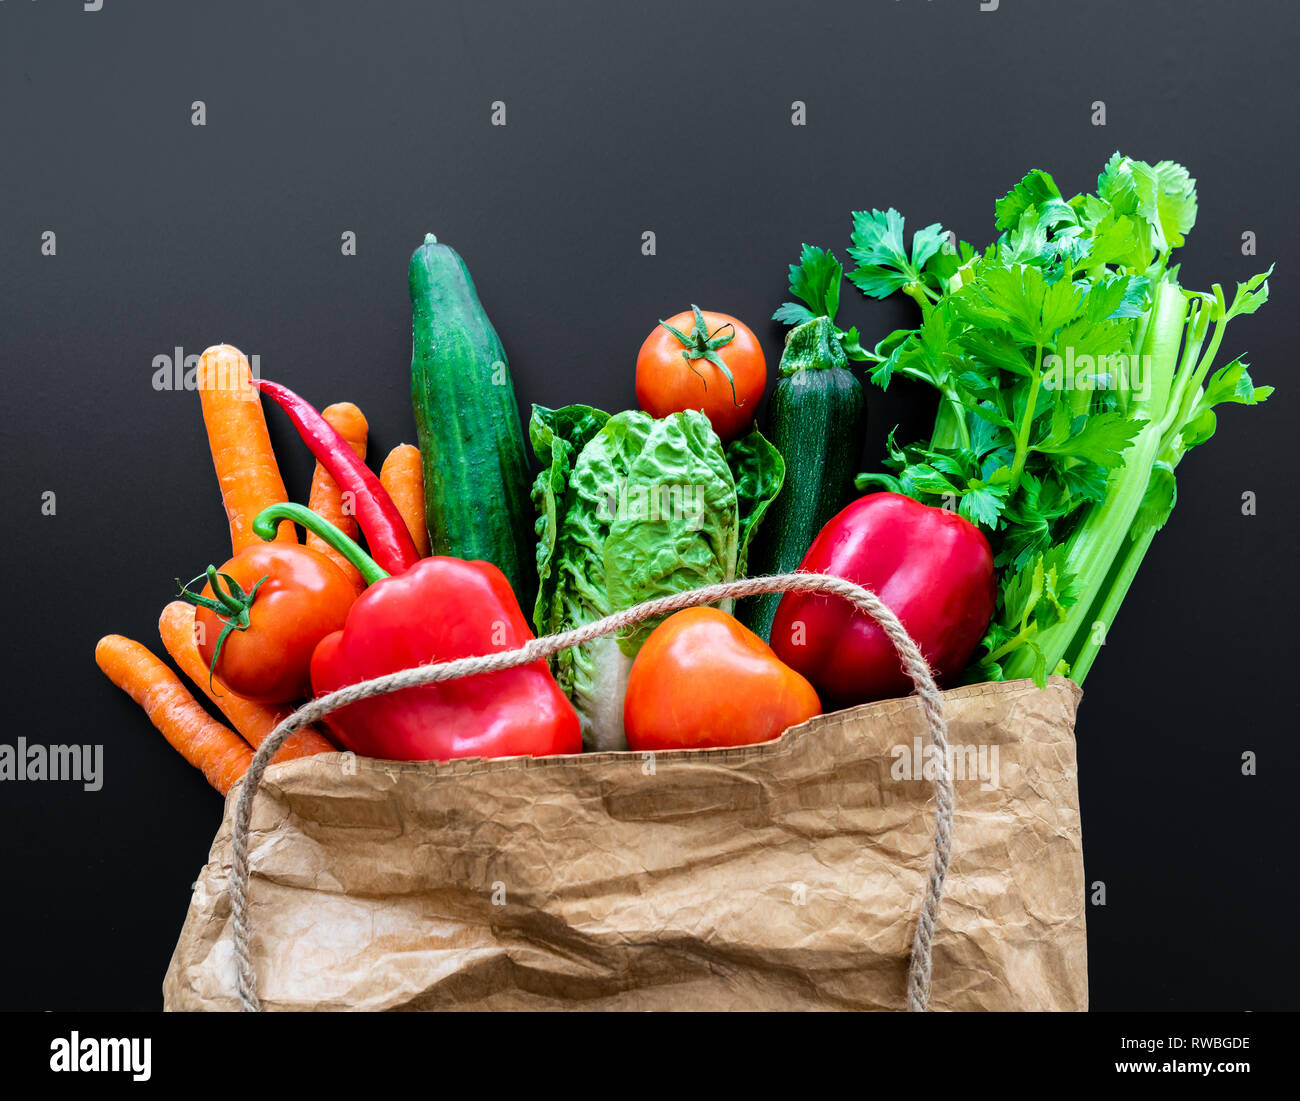 Fresche verdure organiche in carta marrone sacchetto contro scuro dello sfondo della tabella Foto Stock